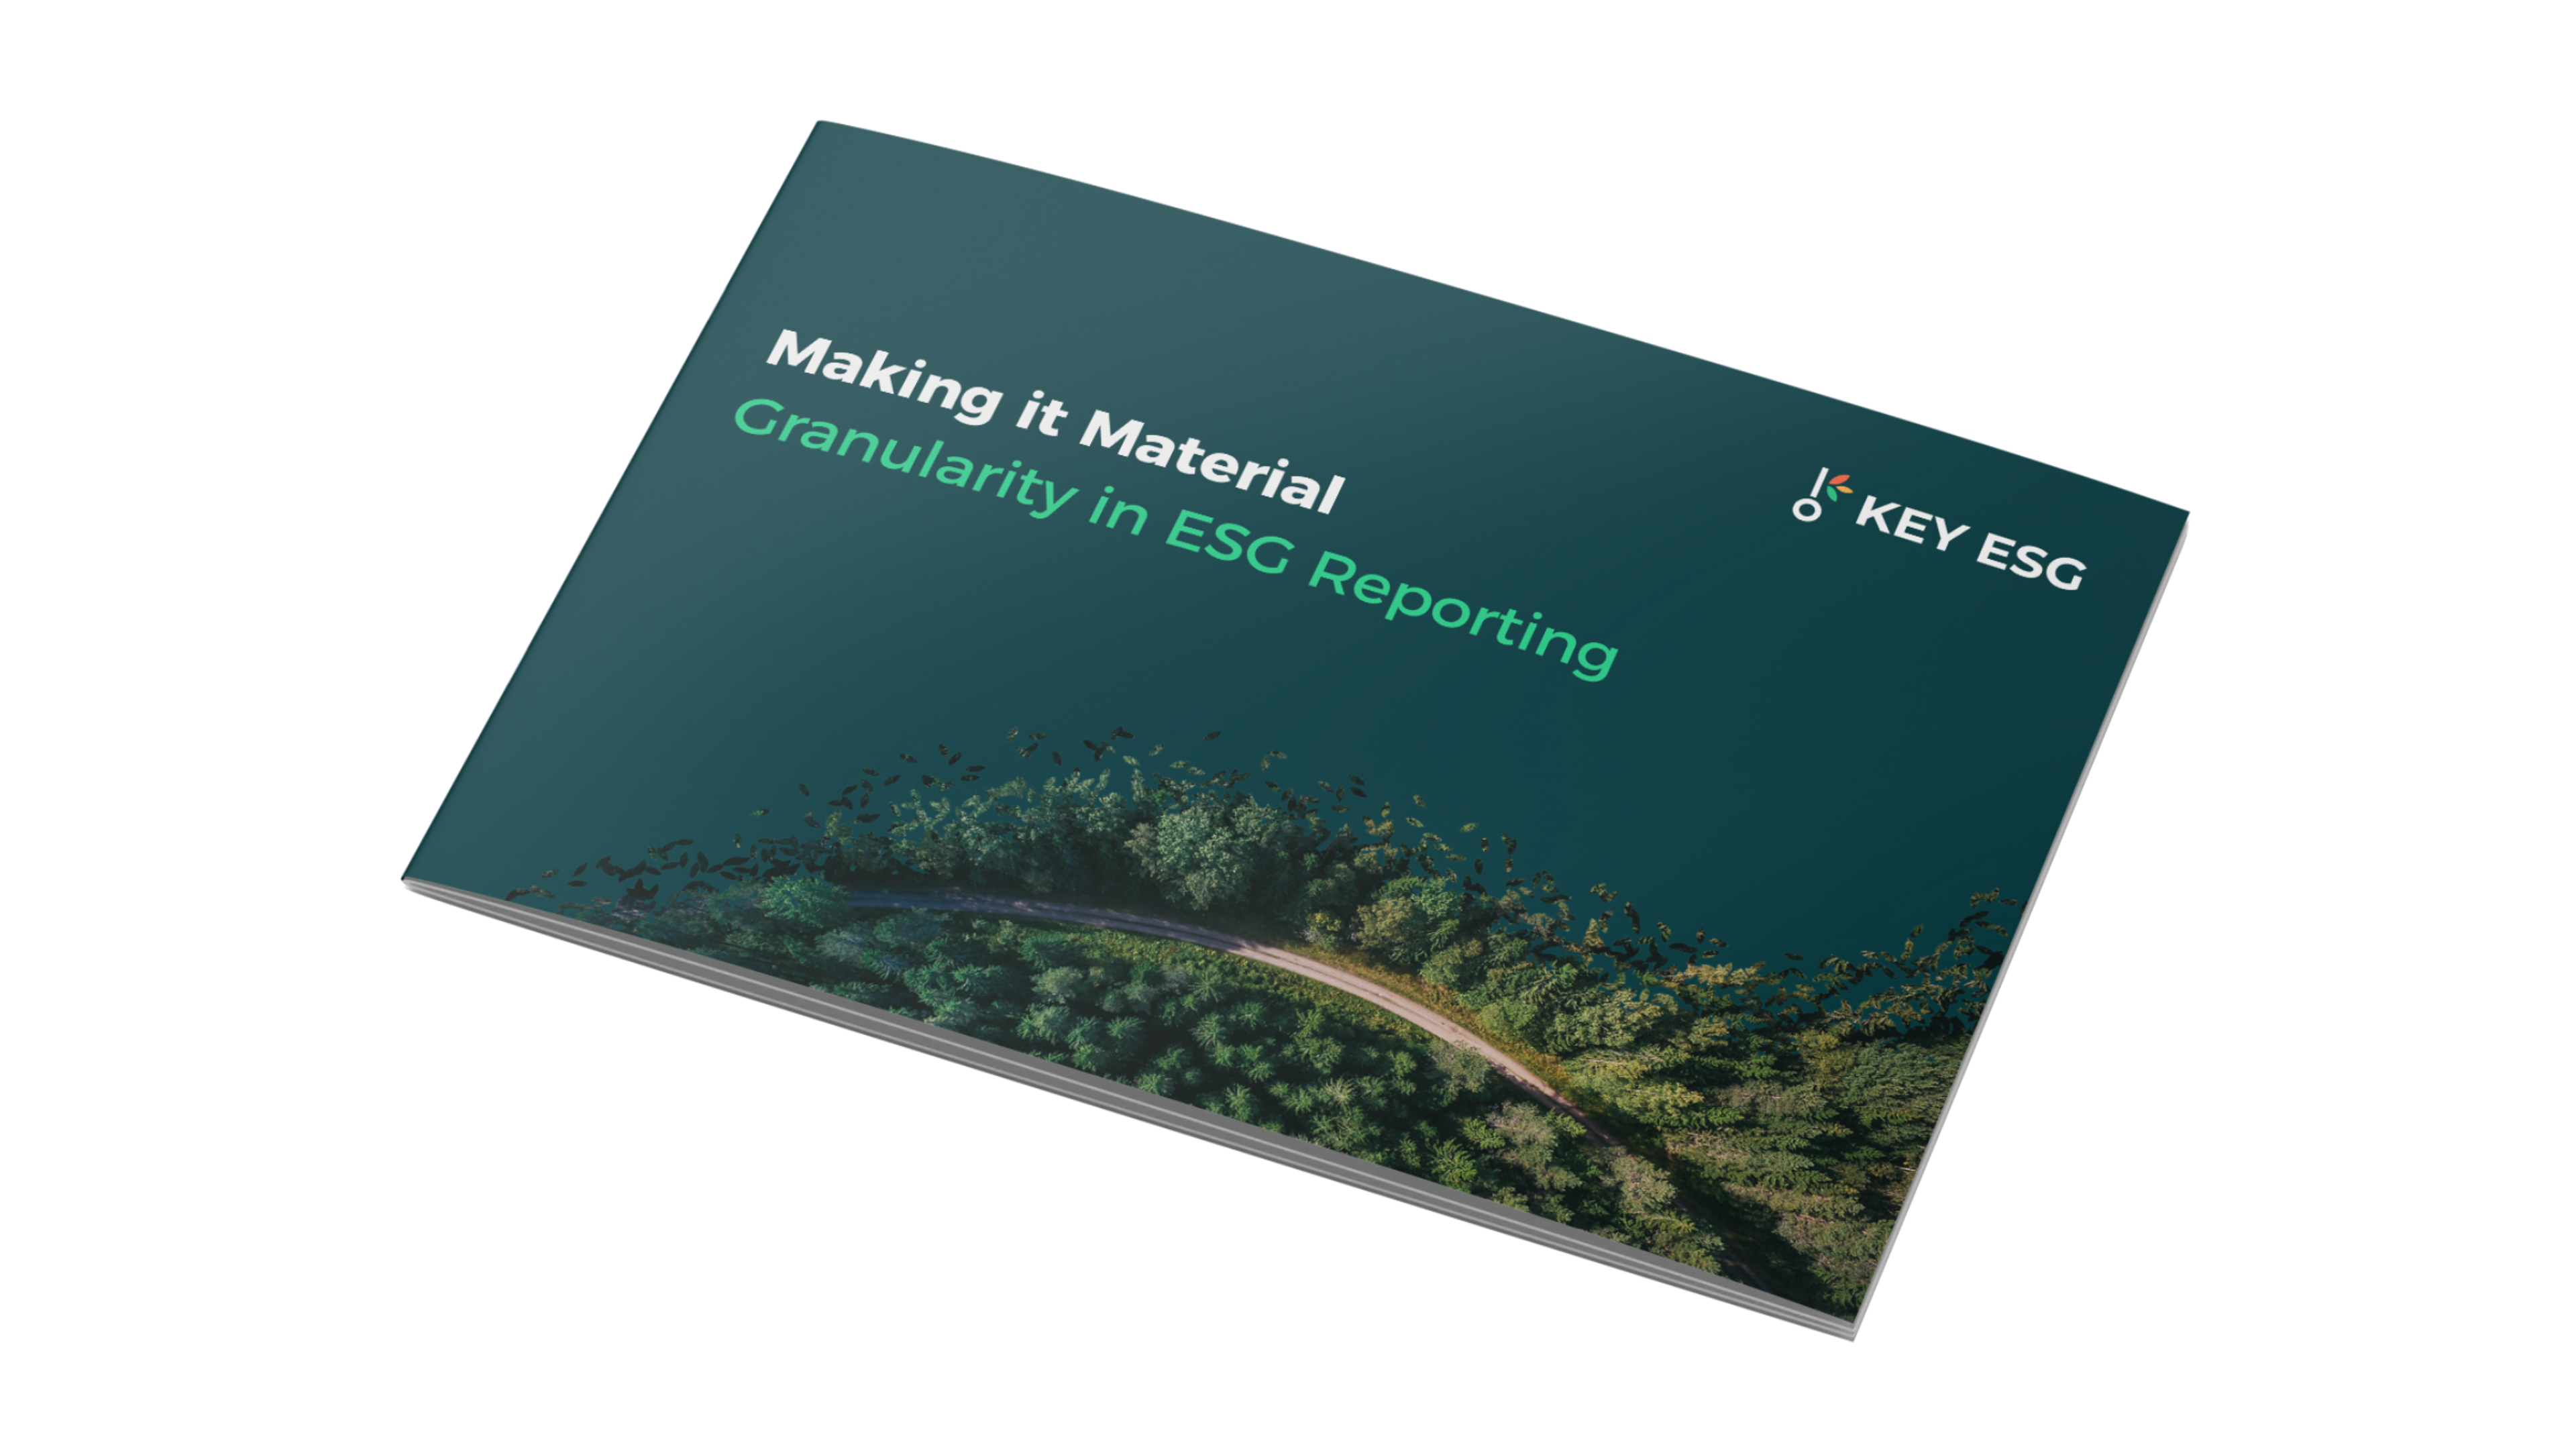 KEY ESG Report "Making it material - Granularity in ESG reporting" cover